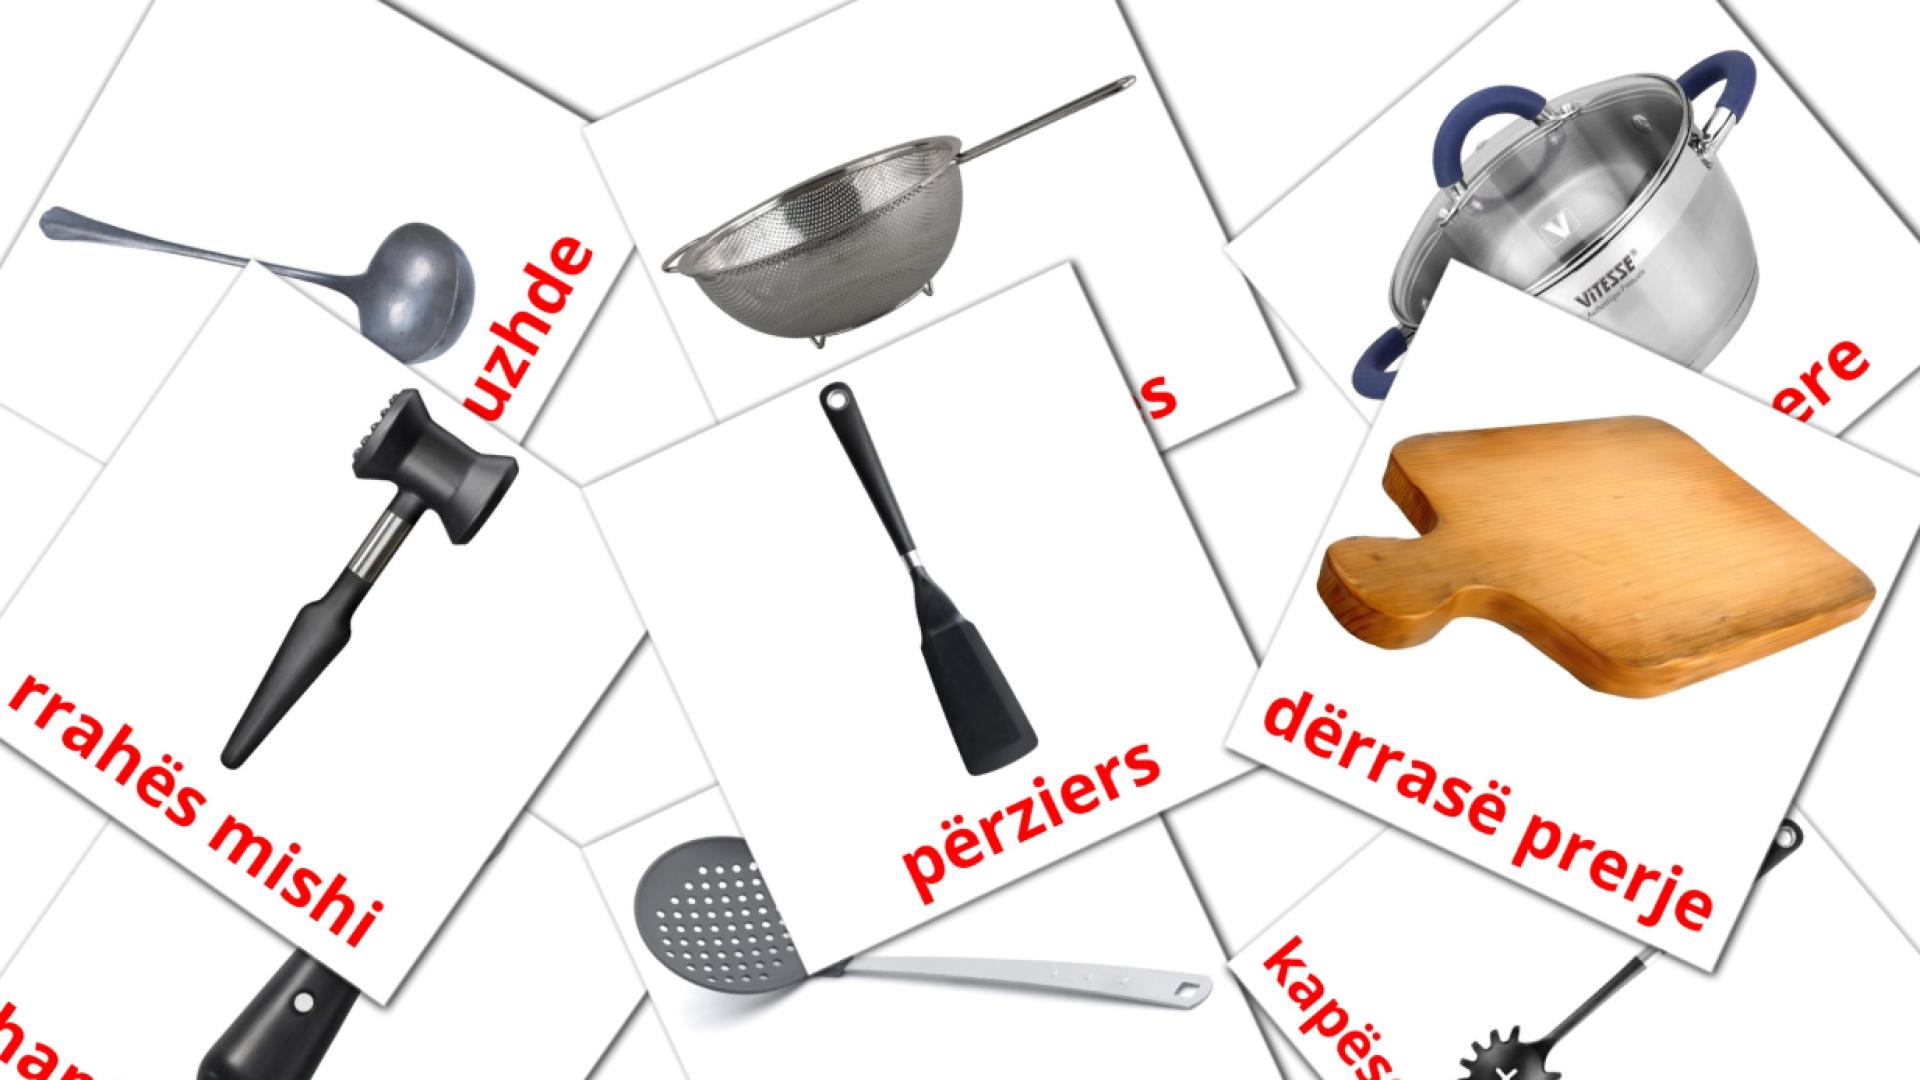 Посуда - албанский словарь картинок